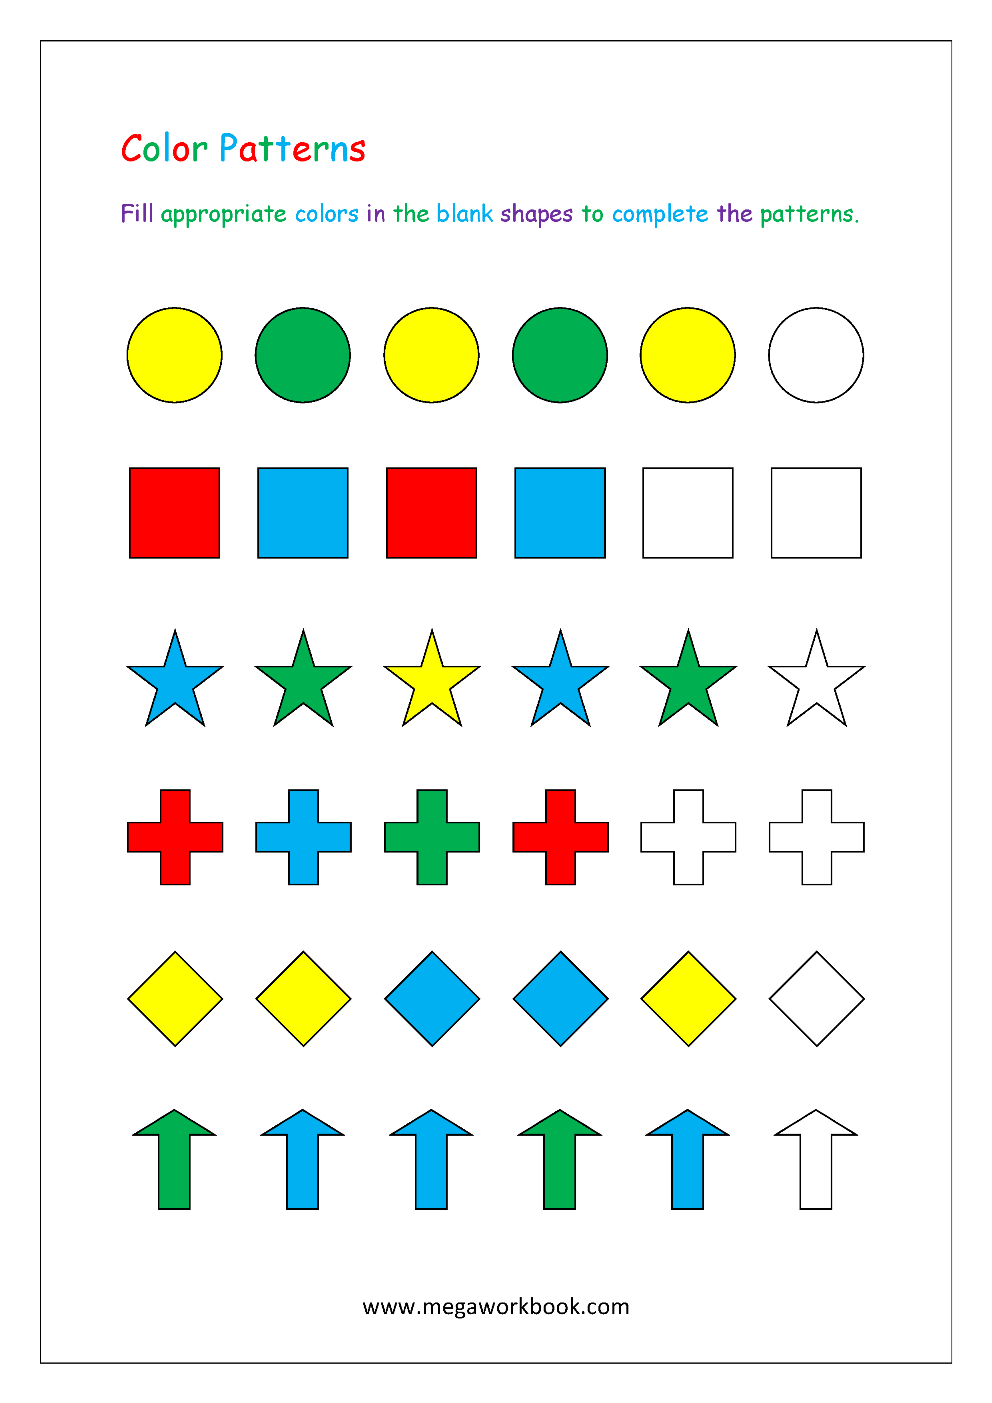 Pattern Matching Worksheet For Preschool - Preschool Worksheet Gallery